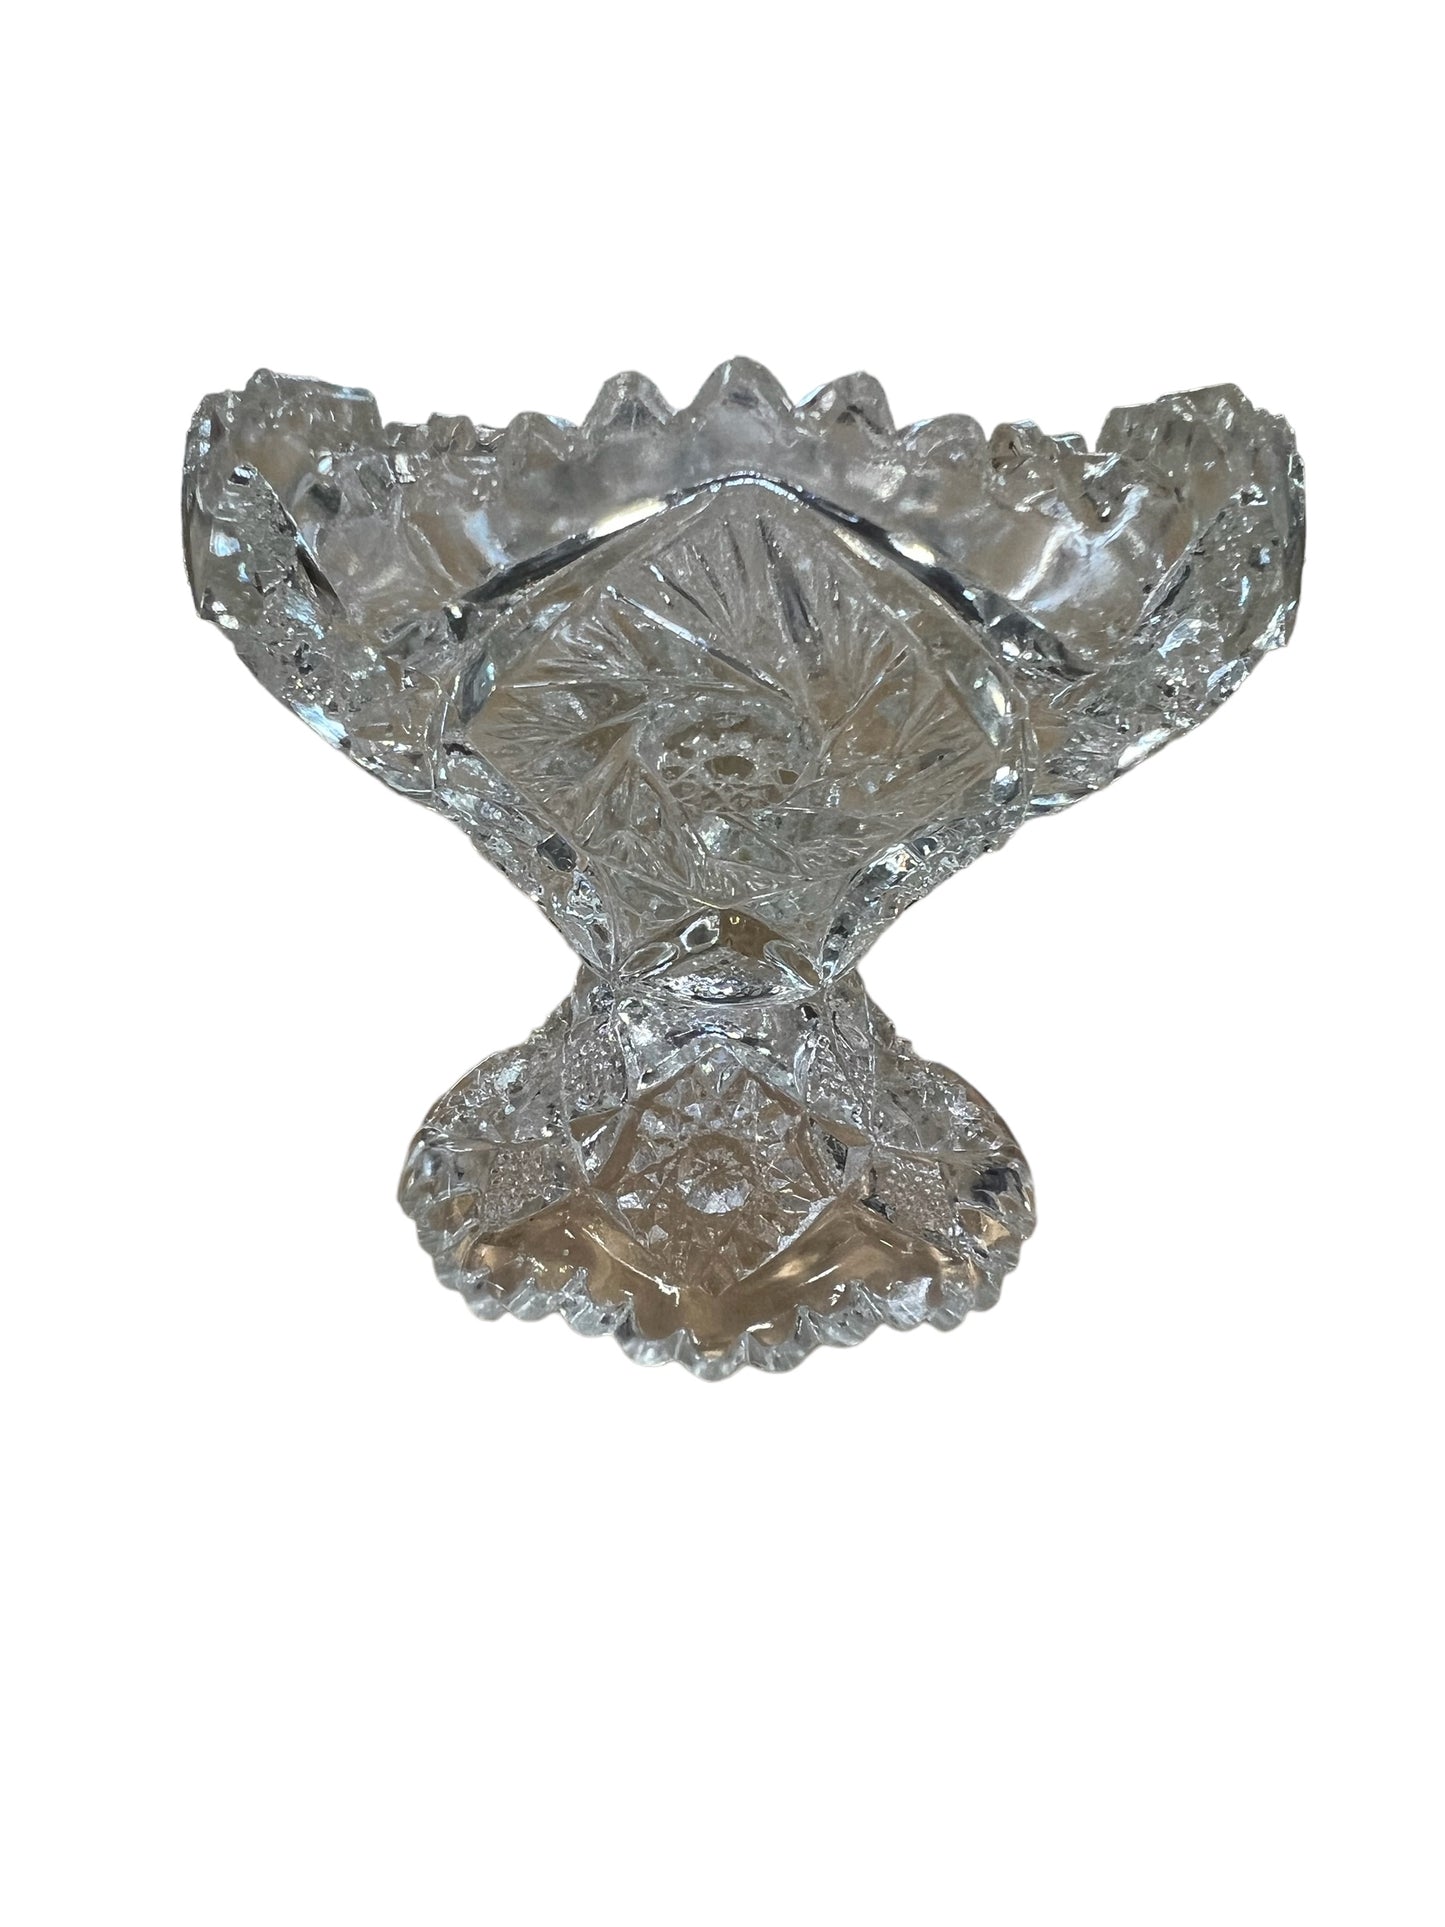 Victorian 1900's NUCUT American Brilliant Cut Glass Pedestal Dish